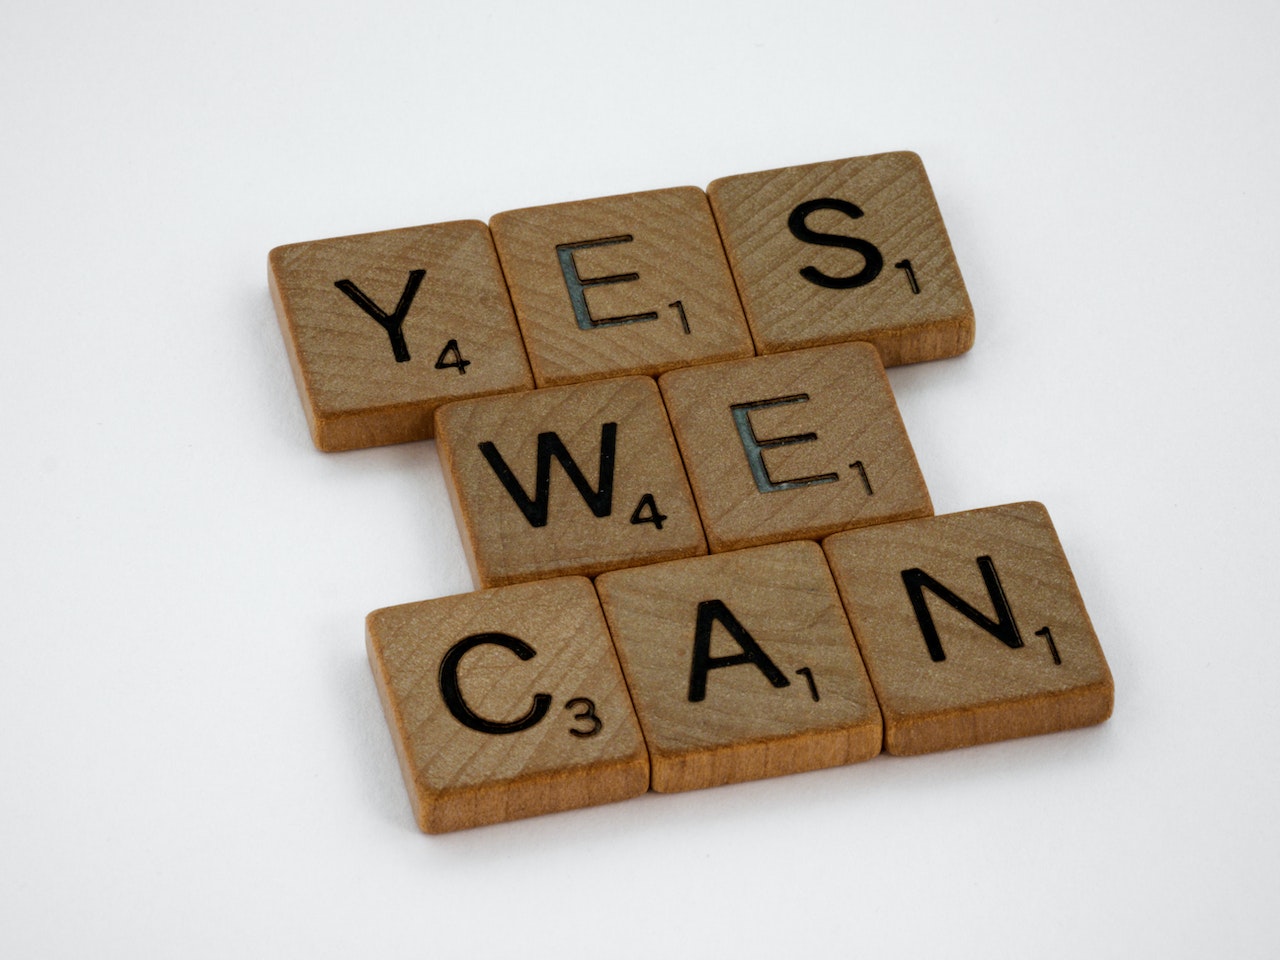 Yes, we can. Brett Jordan, Pexels